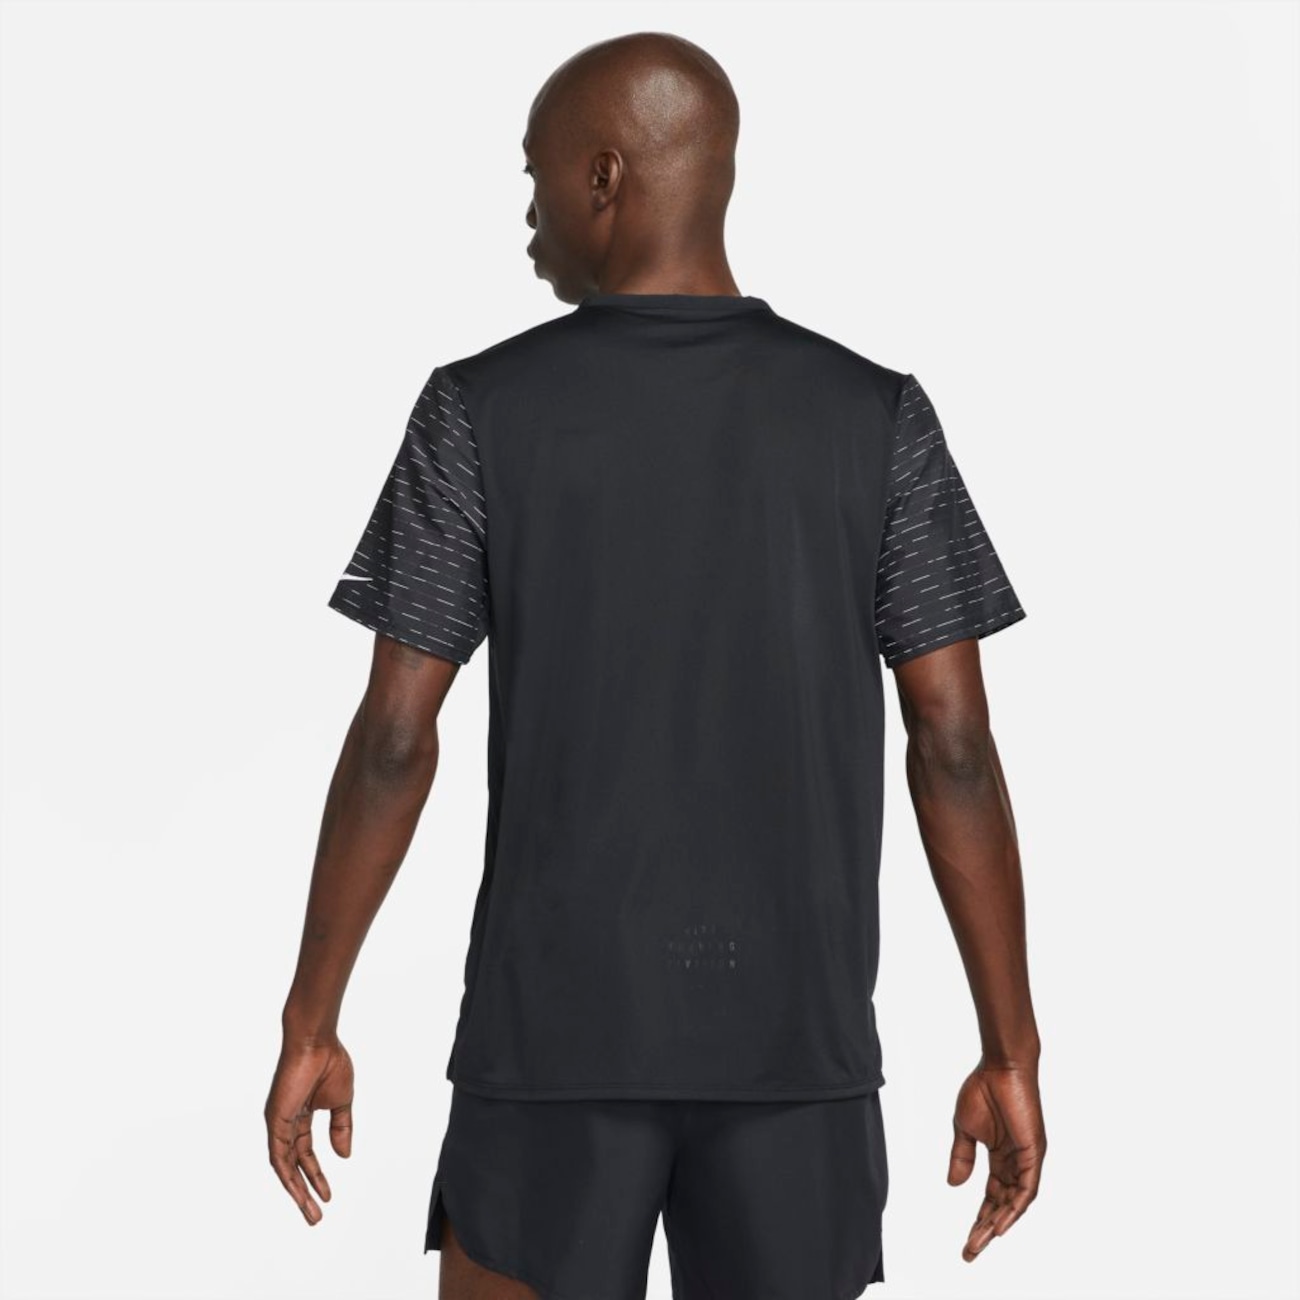 Camiseta Nike Dri-FIT Rise 365 Run Division Masculina - Foto 2